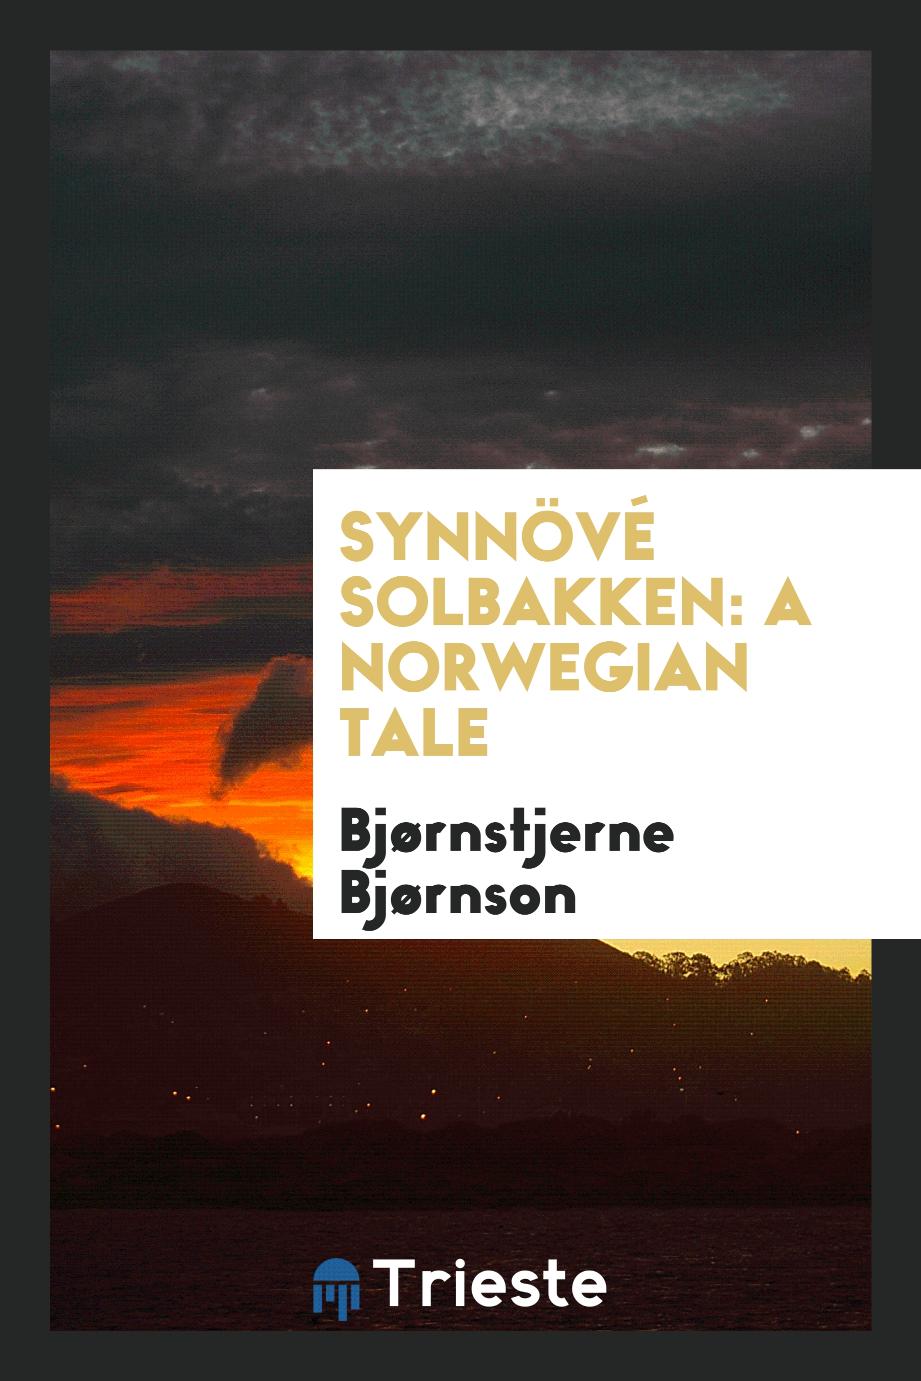 Synnövé Solbakken: a Norwegian tale